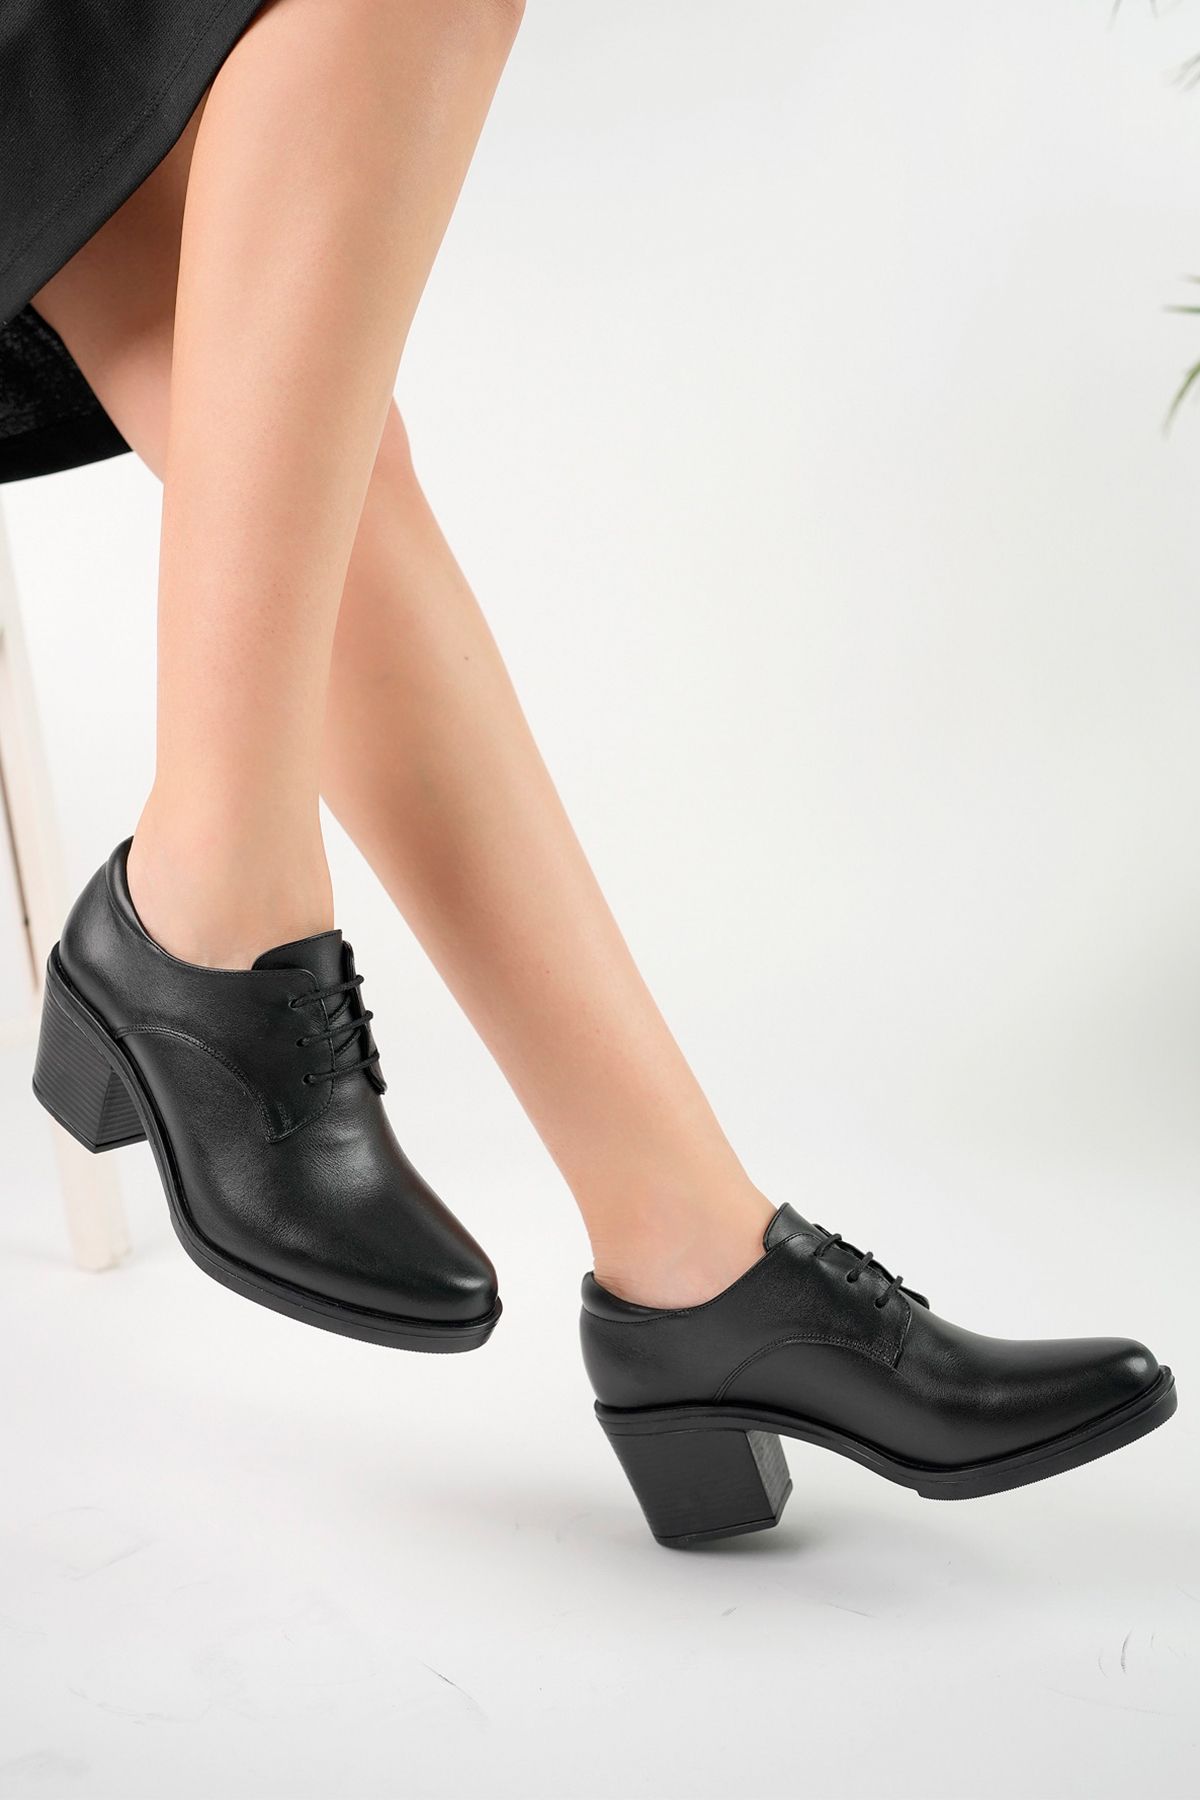 GRADA Siyah Hakiki Deri Kadın Bağcıklı Topuklu Ayakkabı Sivri Burun Deri Klasik Topuklu Bağcıklı Ayakkabı